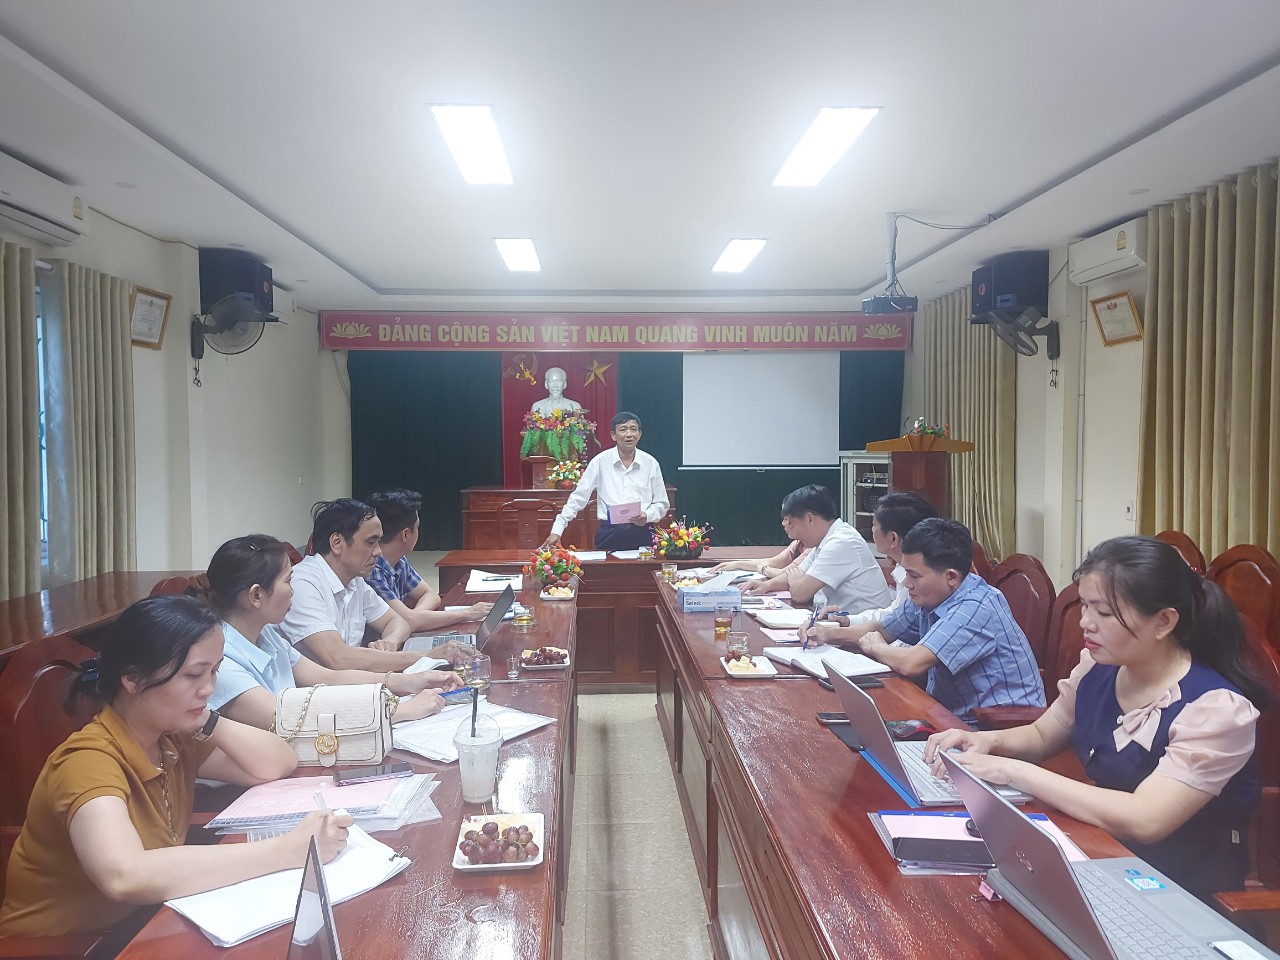 Đồng chí Trần Trung Thành – Phó Chủ tịch Thường trực Hội Nông dân tỉnh kết luận kiểm tra